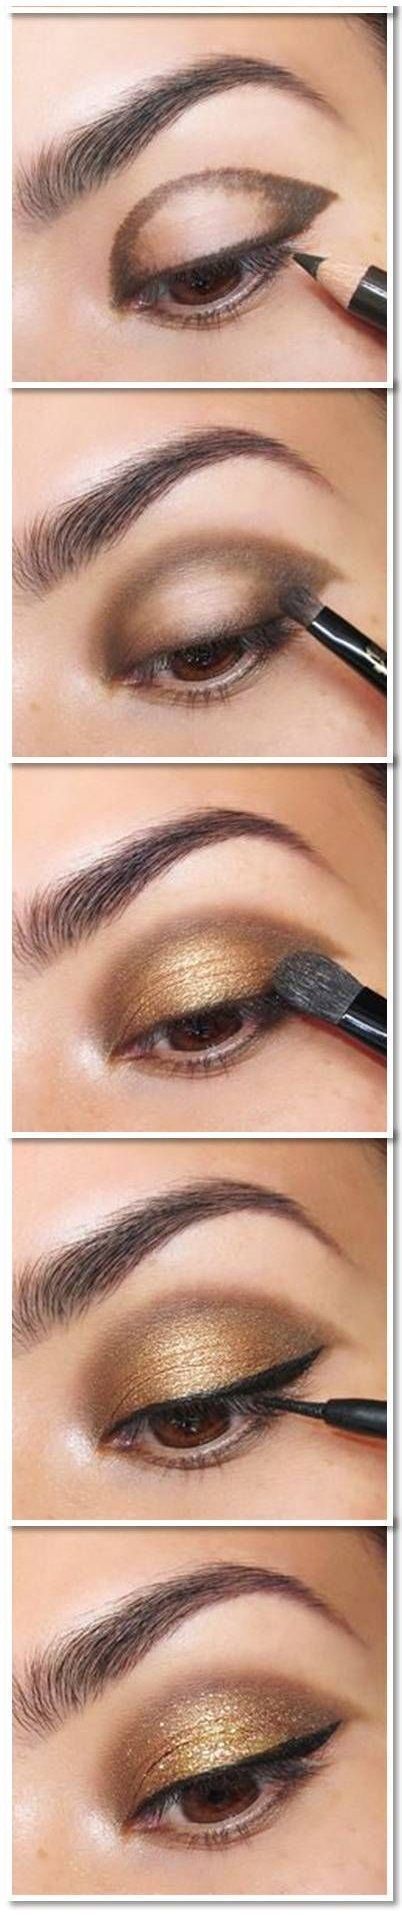 Donkere bruine ogen make-up tutorial